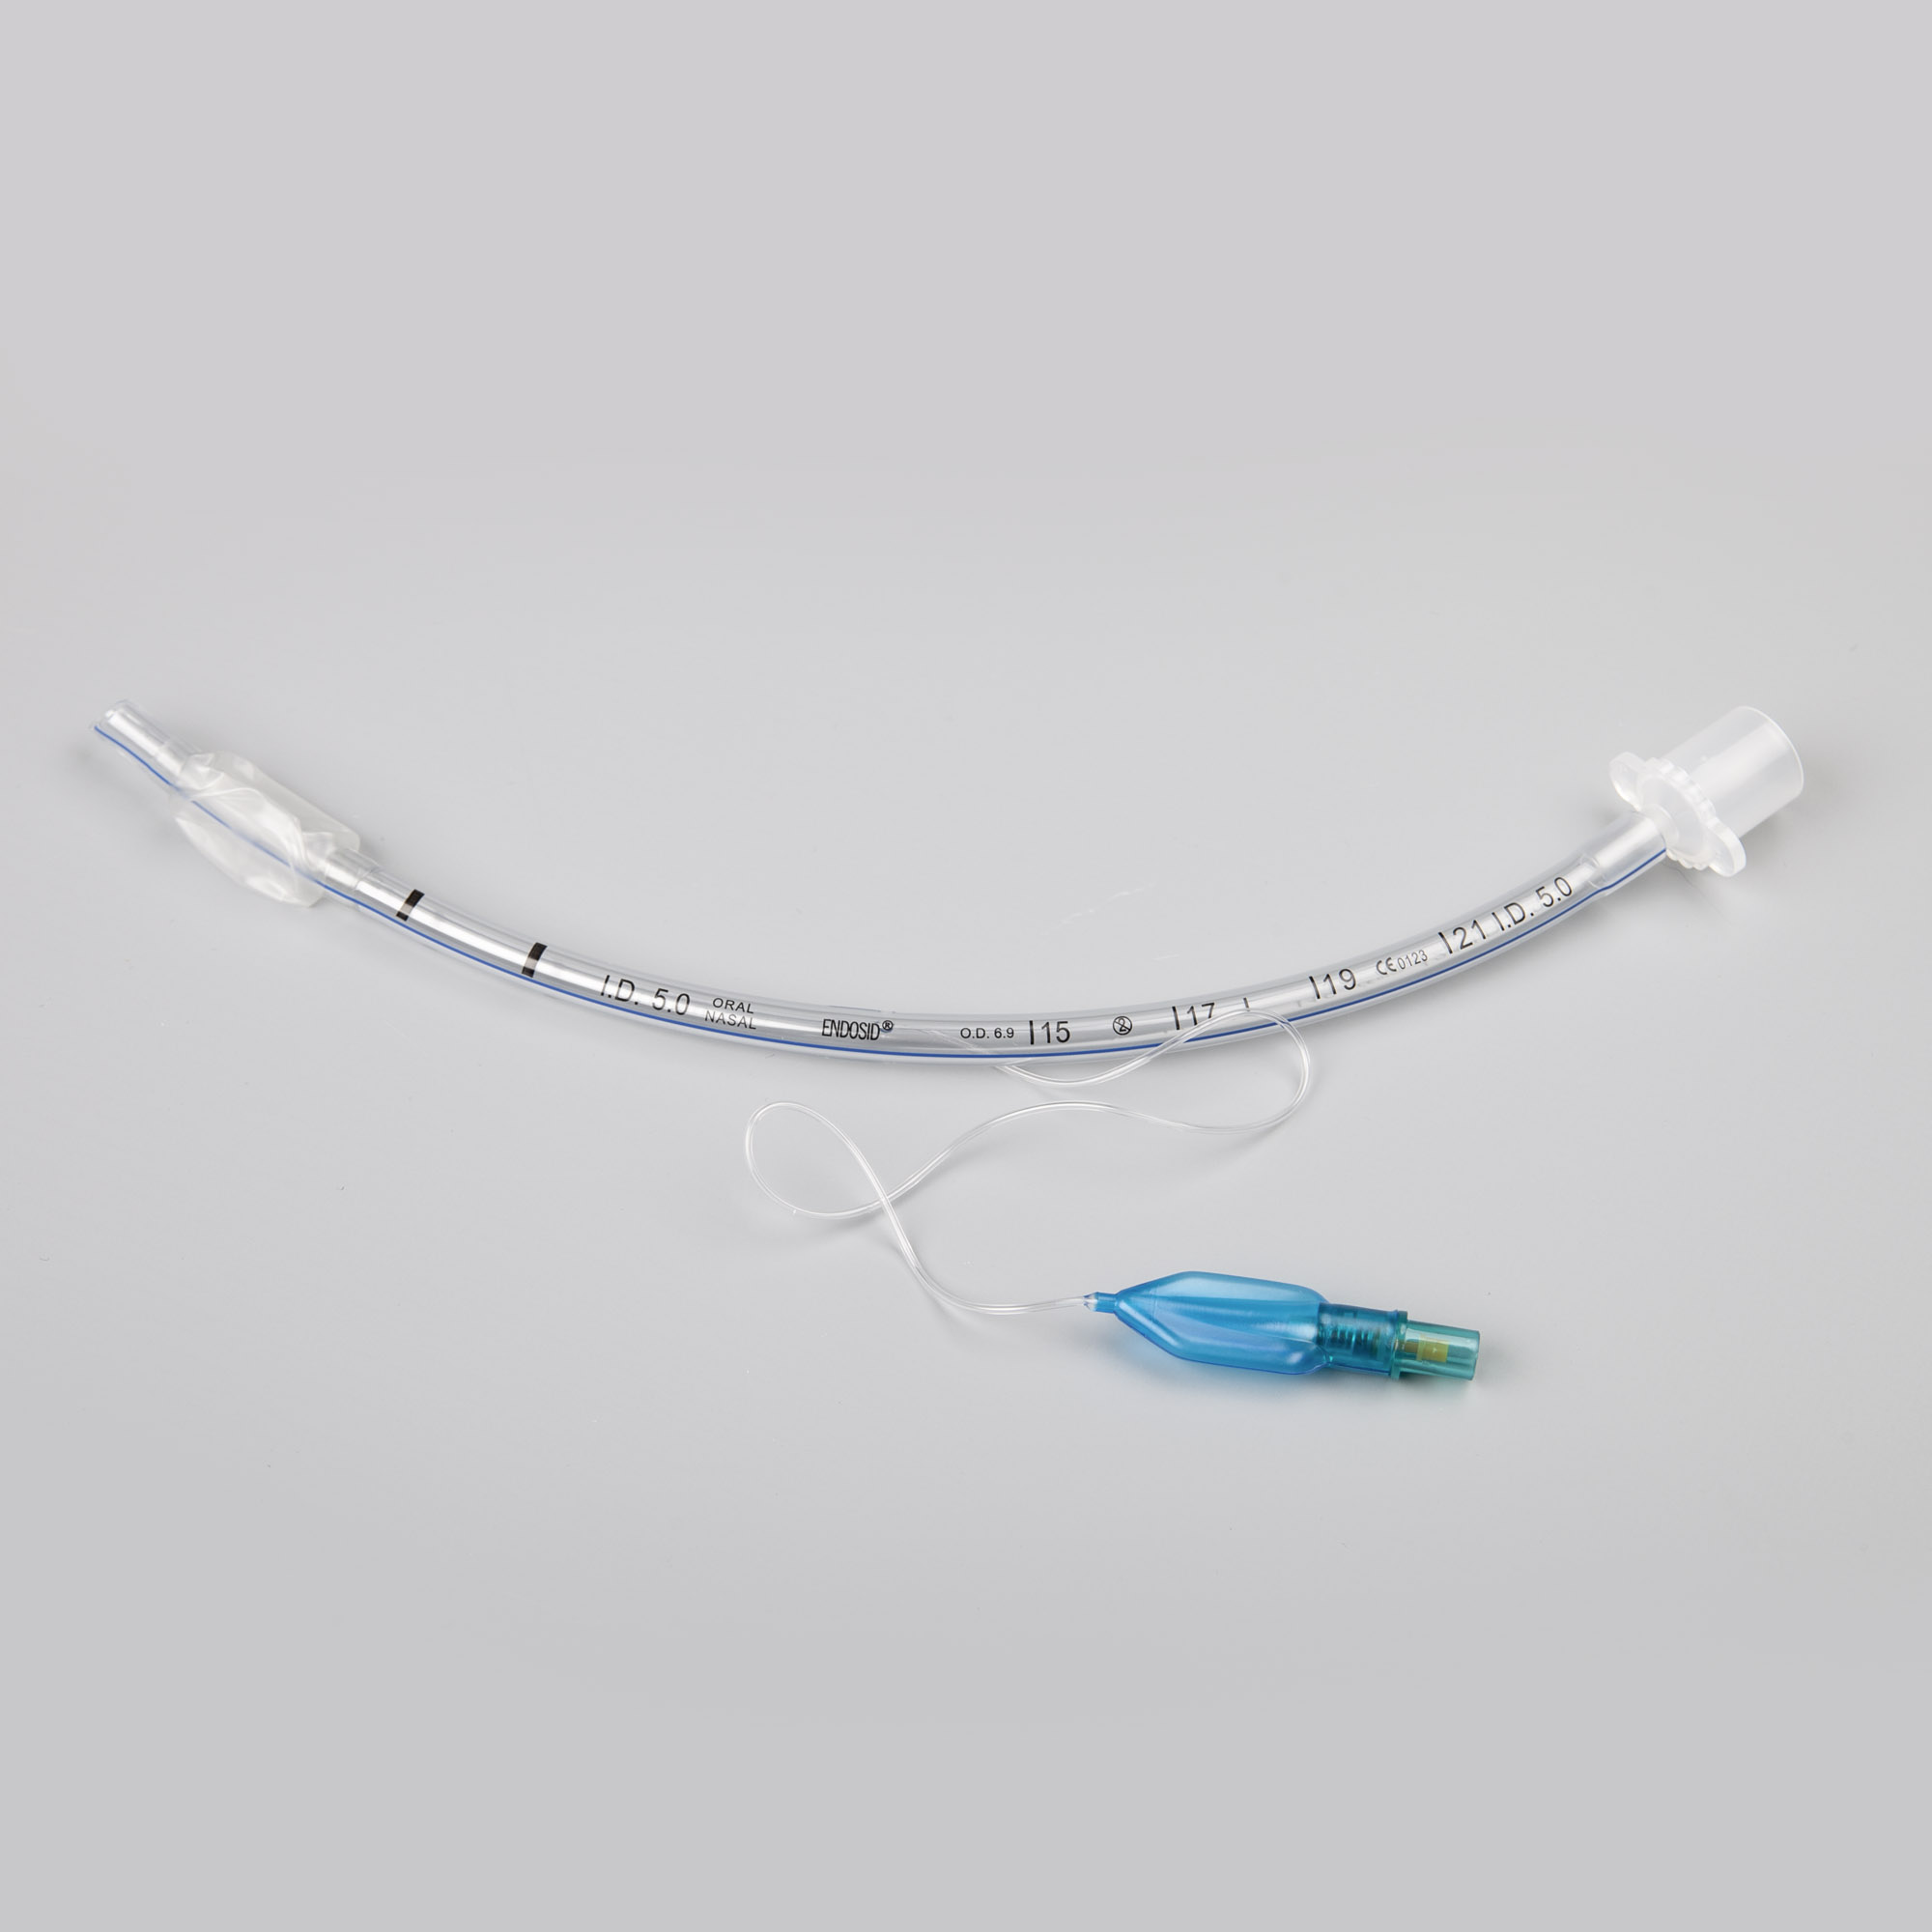 Endosid®-Tubus nasal/oral mit Cuff, Murphy-Auge und Mandrin I.D. 5,0 (CH 20)